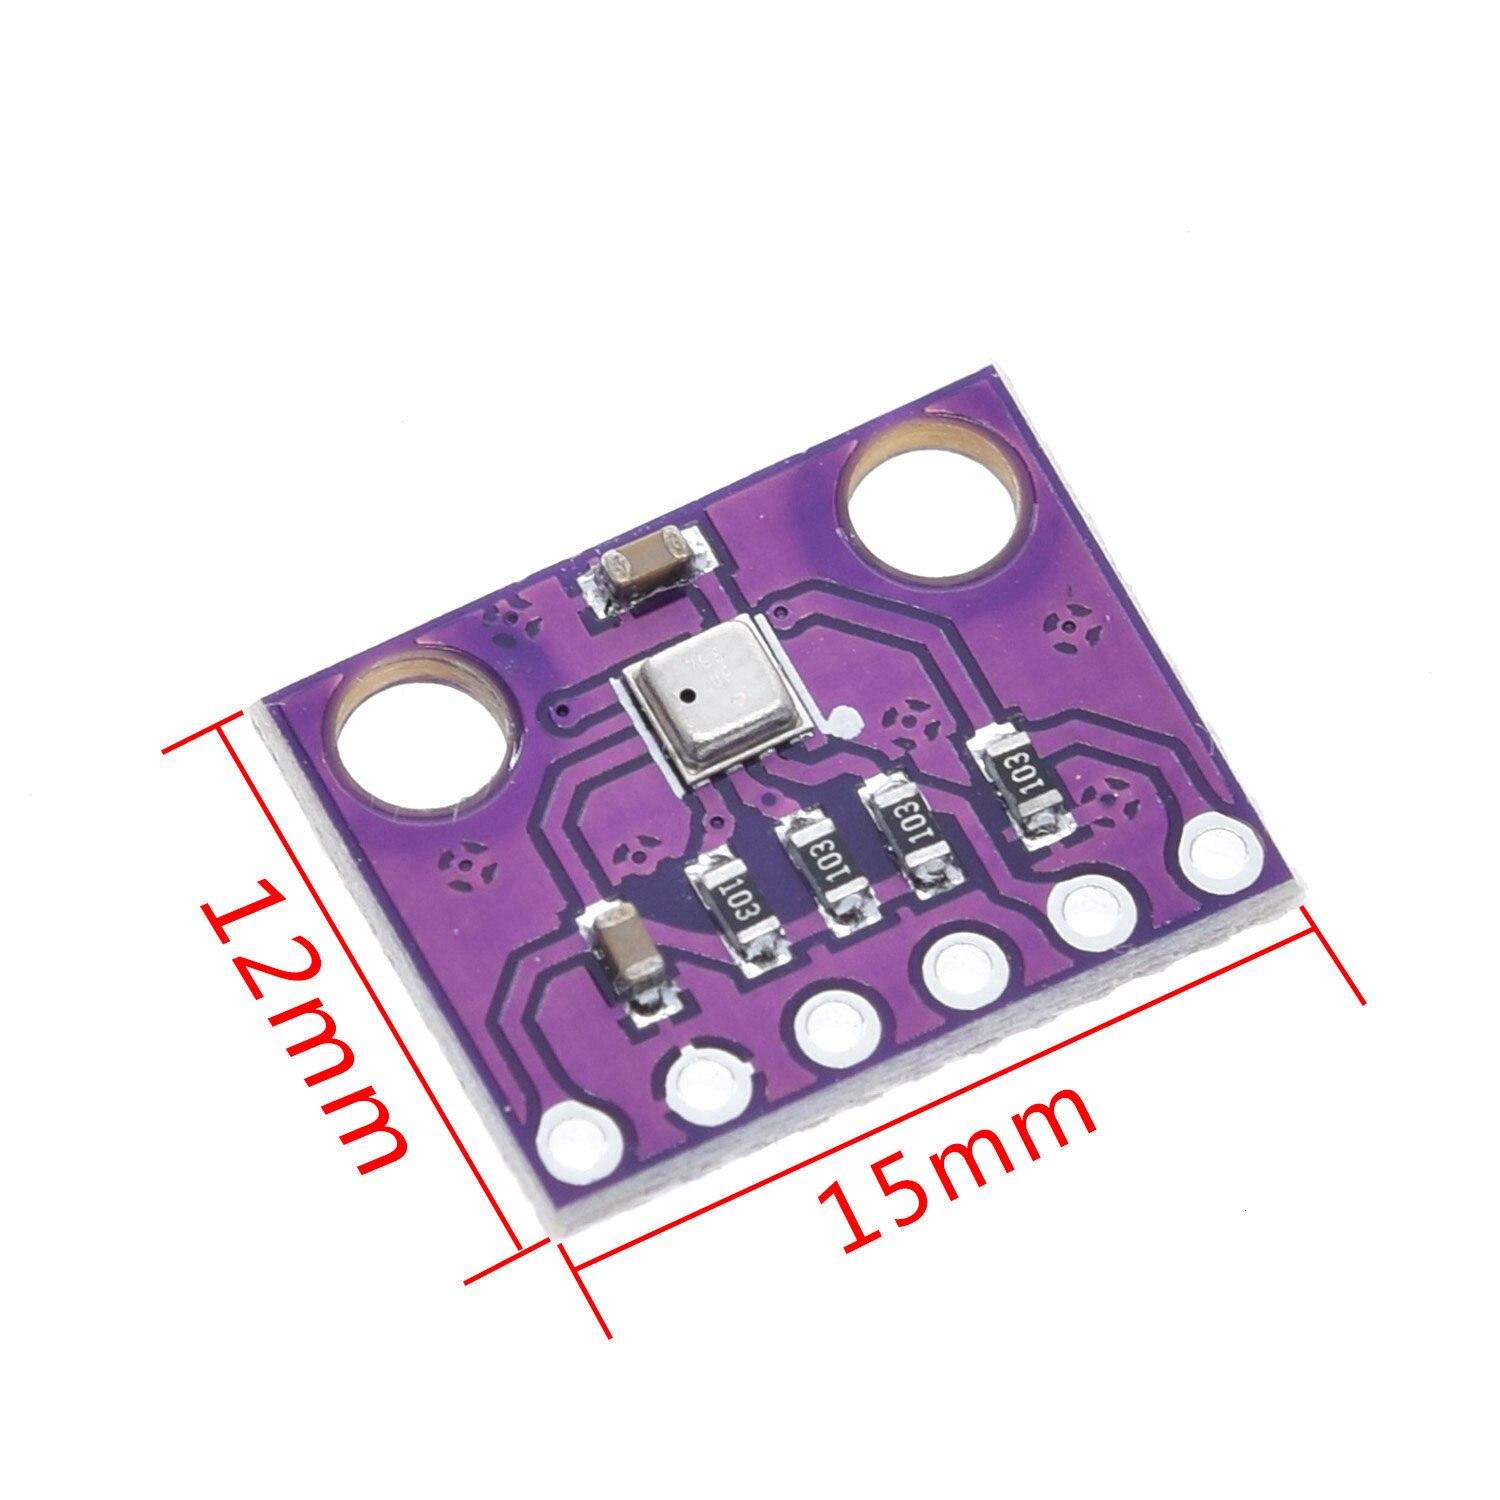 BME280 BMP280 3.3V Digital Sensor Temperature Humidity Barometric Pressure Sensor Module I2C SPI 3.3V